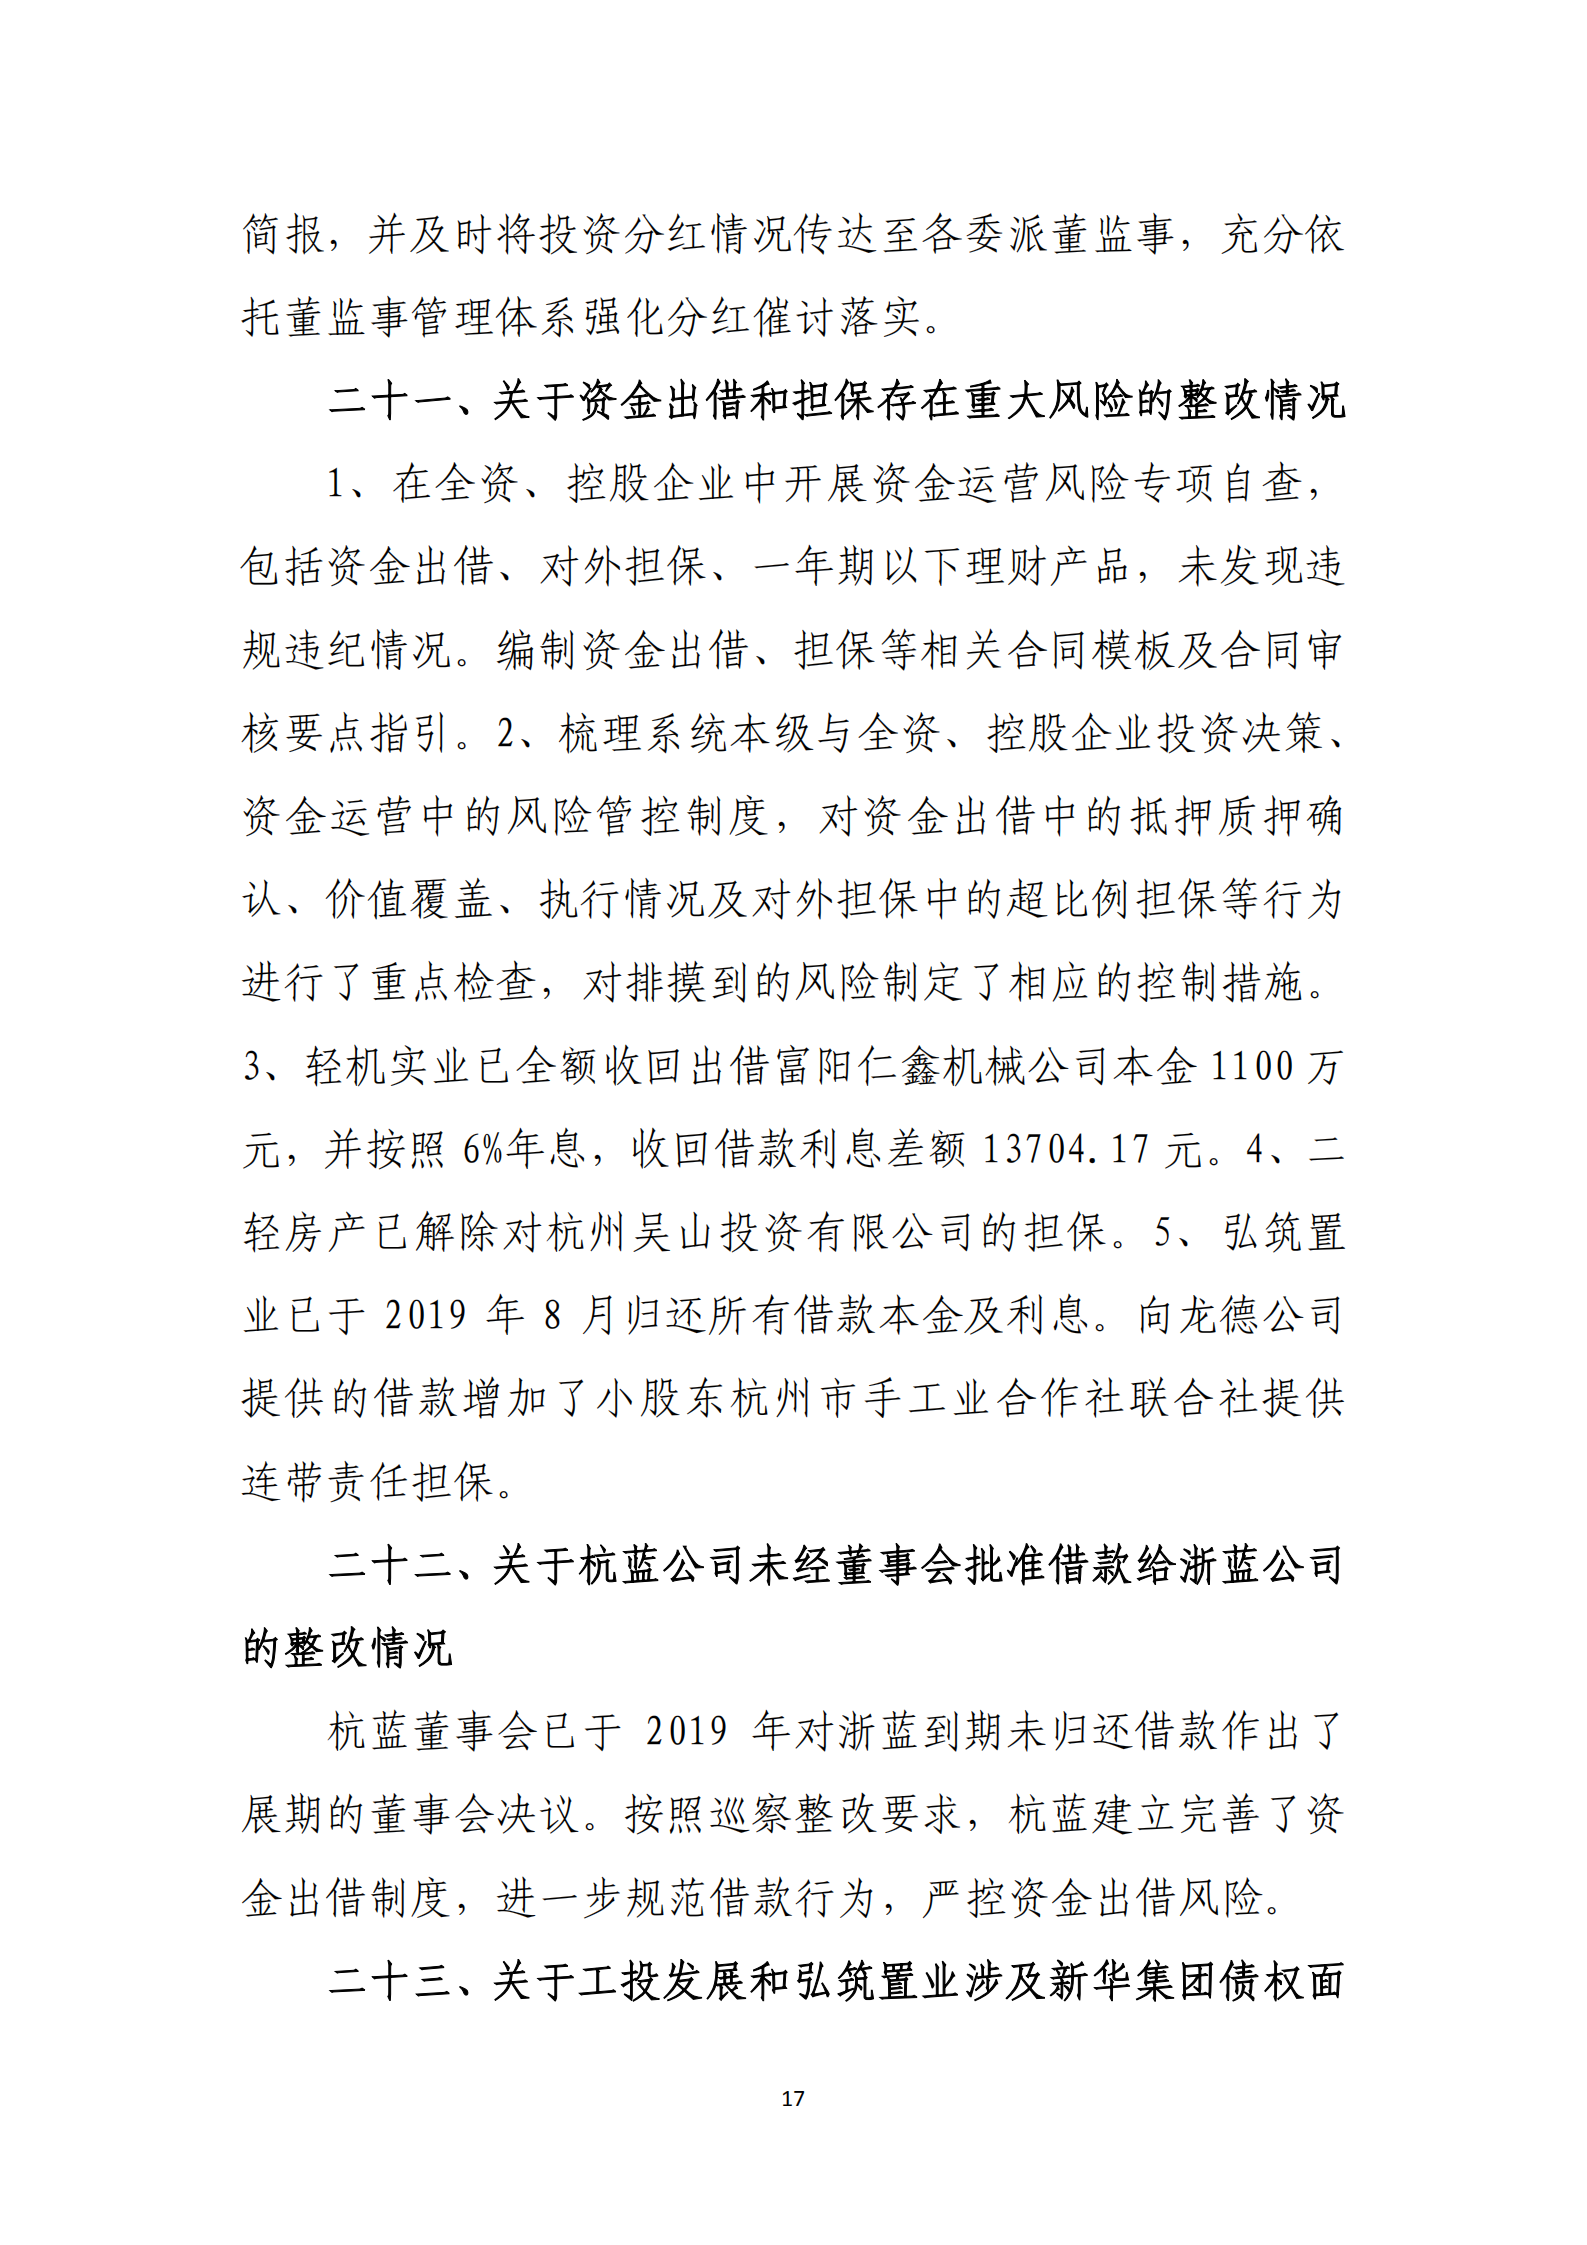 乐虎国际游戏官网党委关于巡察整改情况的通报_16.png